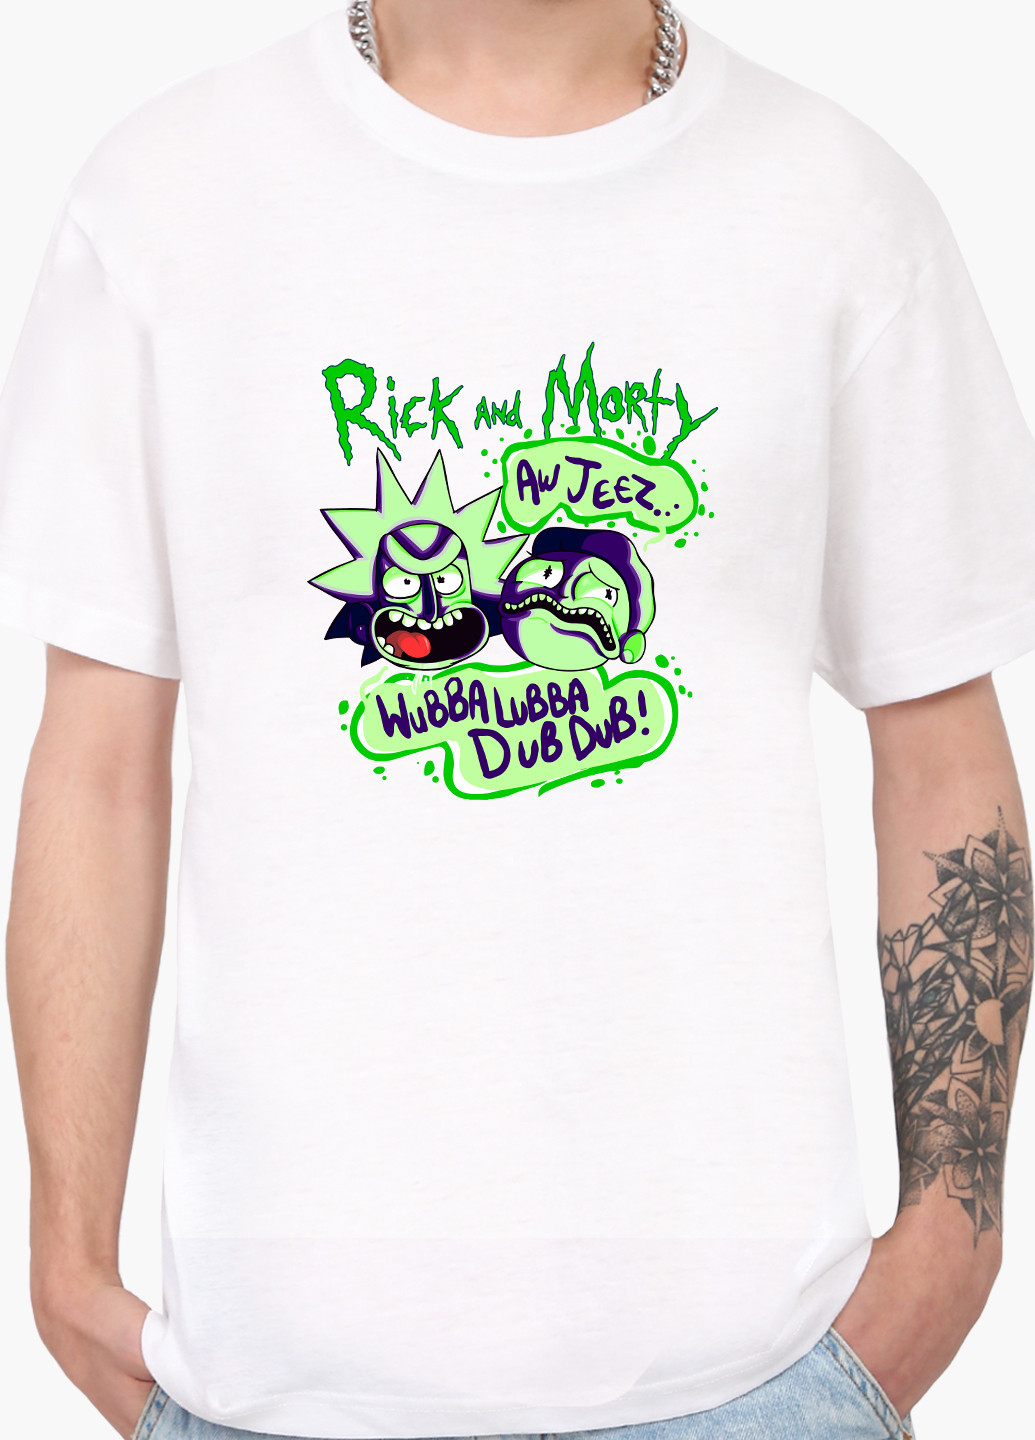 Біла футболка чоловіча рік санчез рік і морті (rick sanchez rick and morty) білий (9223-2937) xxl MobiPrint